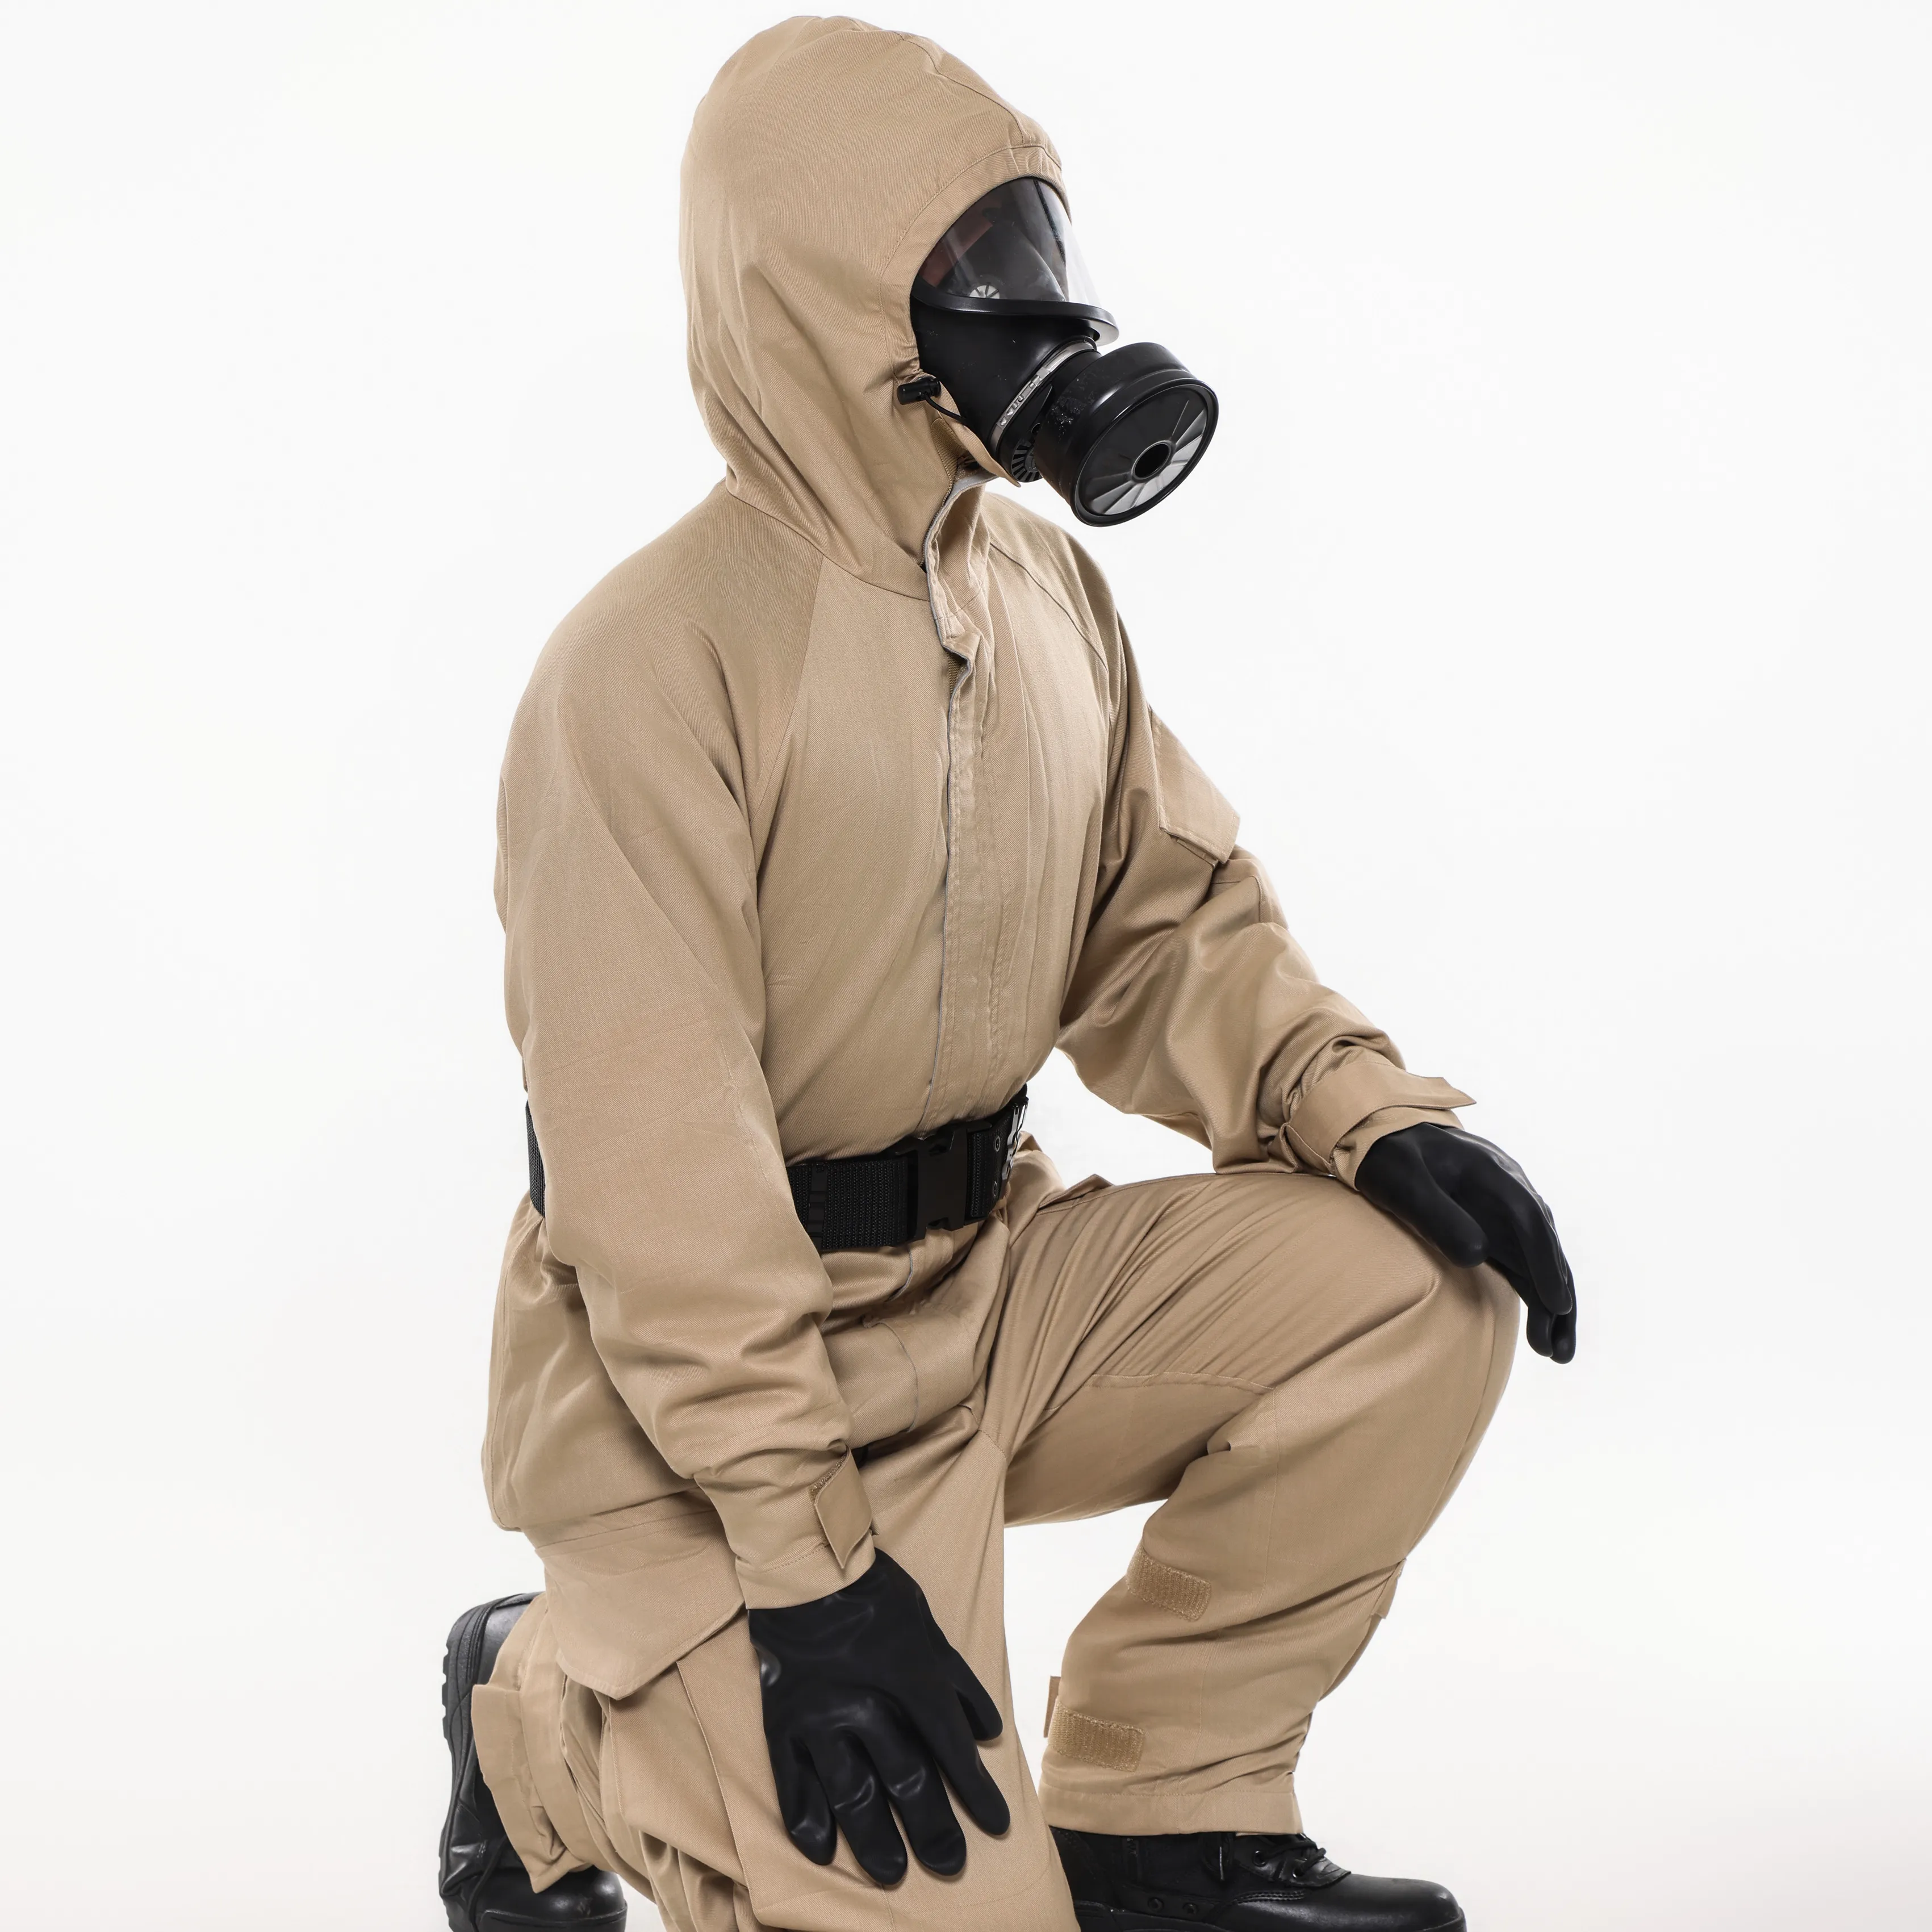 GGM-05 ملابس واقية من الكربون المنشط ملابس عمل تسمح بتخلل الهواء للاستخدام في المصانع والإنتاج الكيميائي